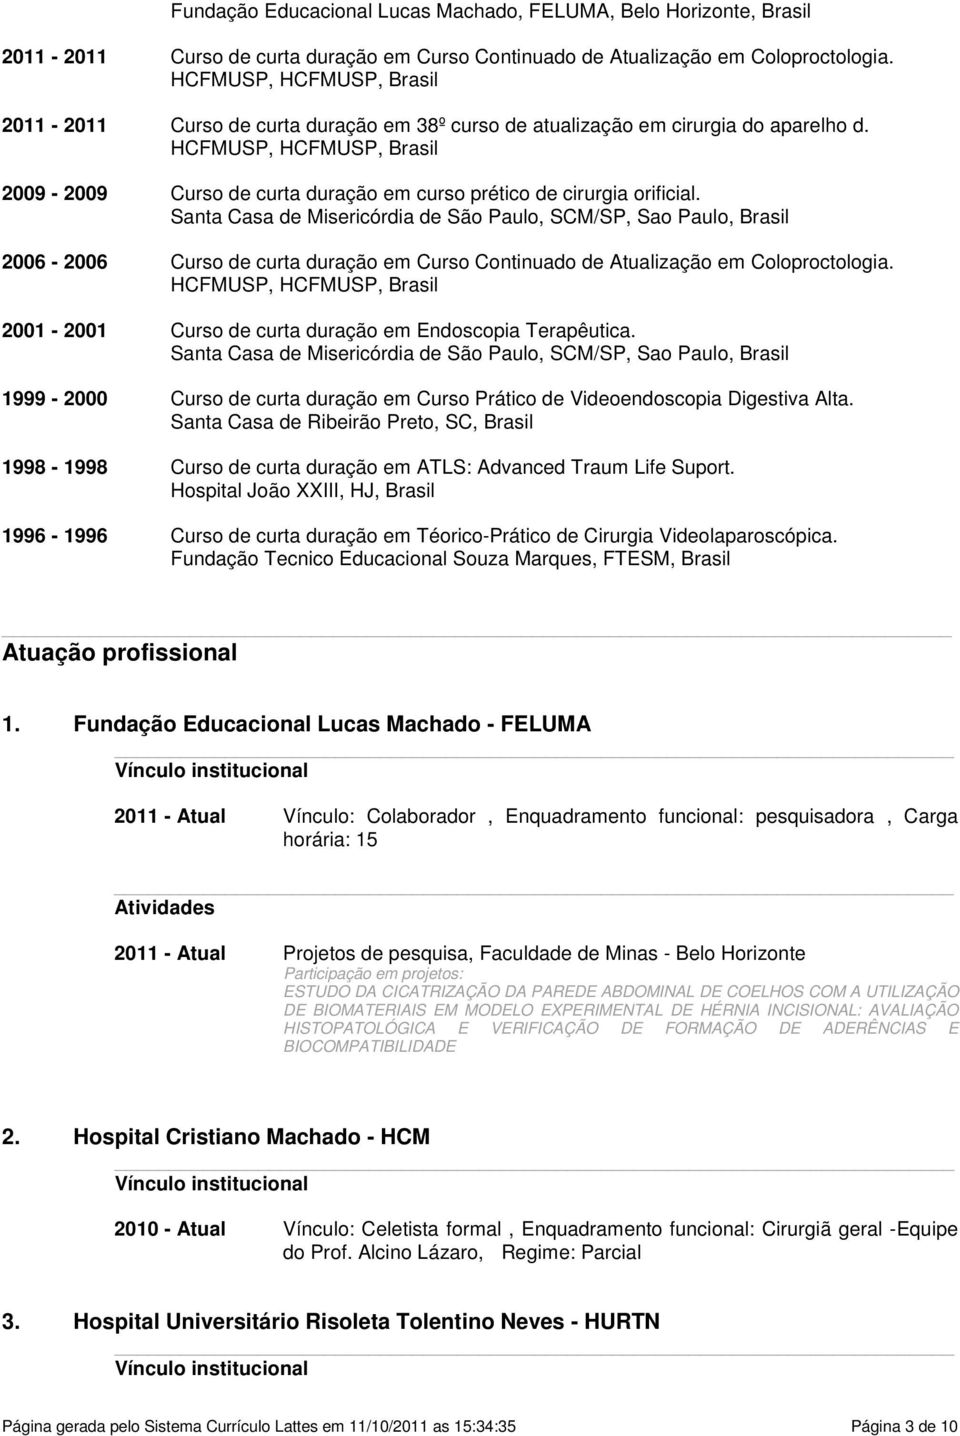 Paulo, SCM/SP, Sao Paulo, Brasil 2006-2006 Curso de curta duração em Curso Continuado de Atualização em Coloproctologia HCFMUSP, HCFMUSP, Brasil 2001-2001 Curso de curta duração em Endoscopia